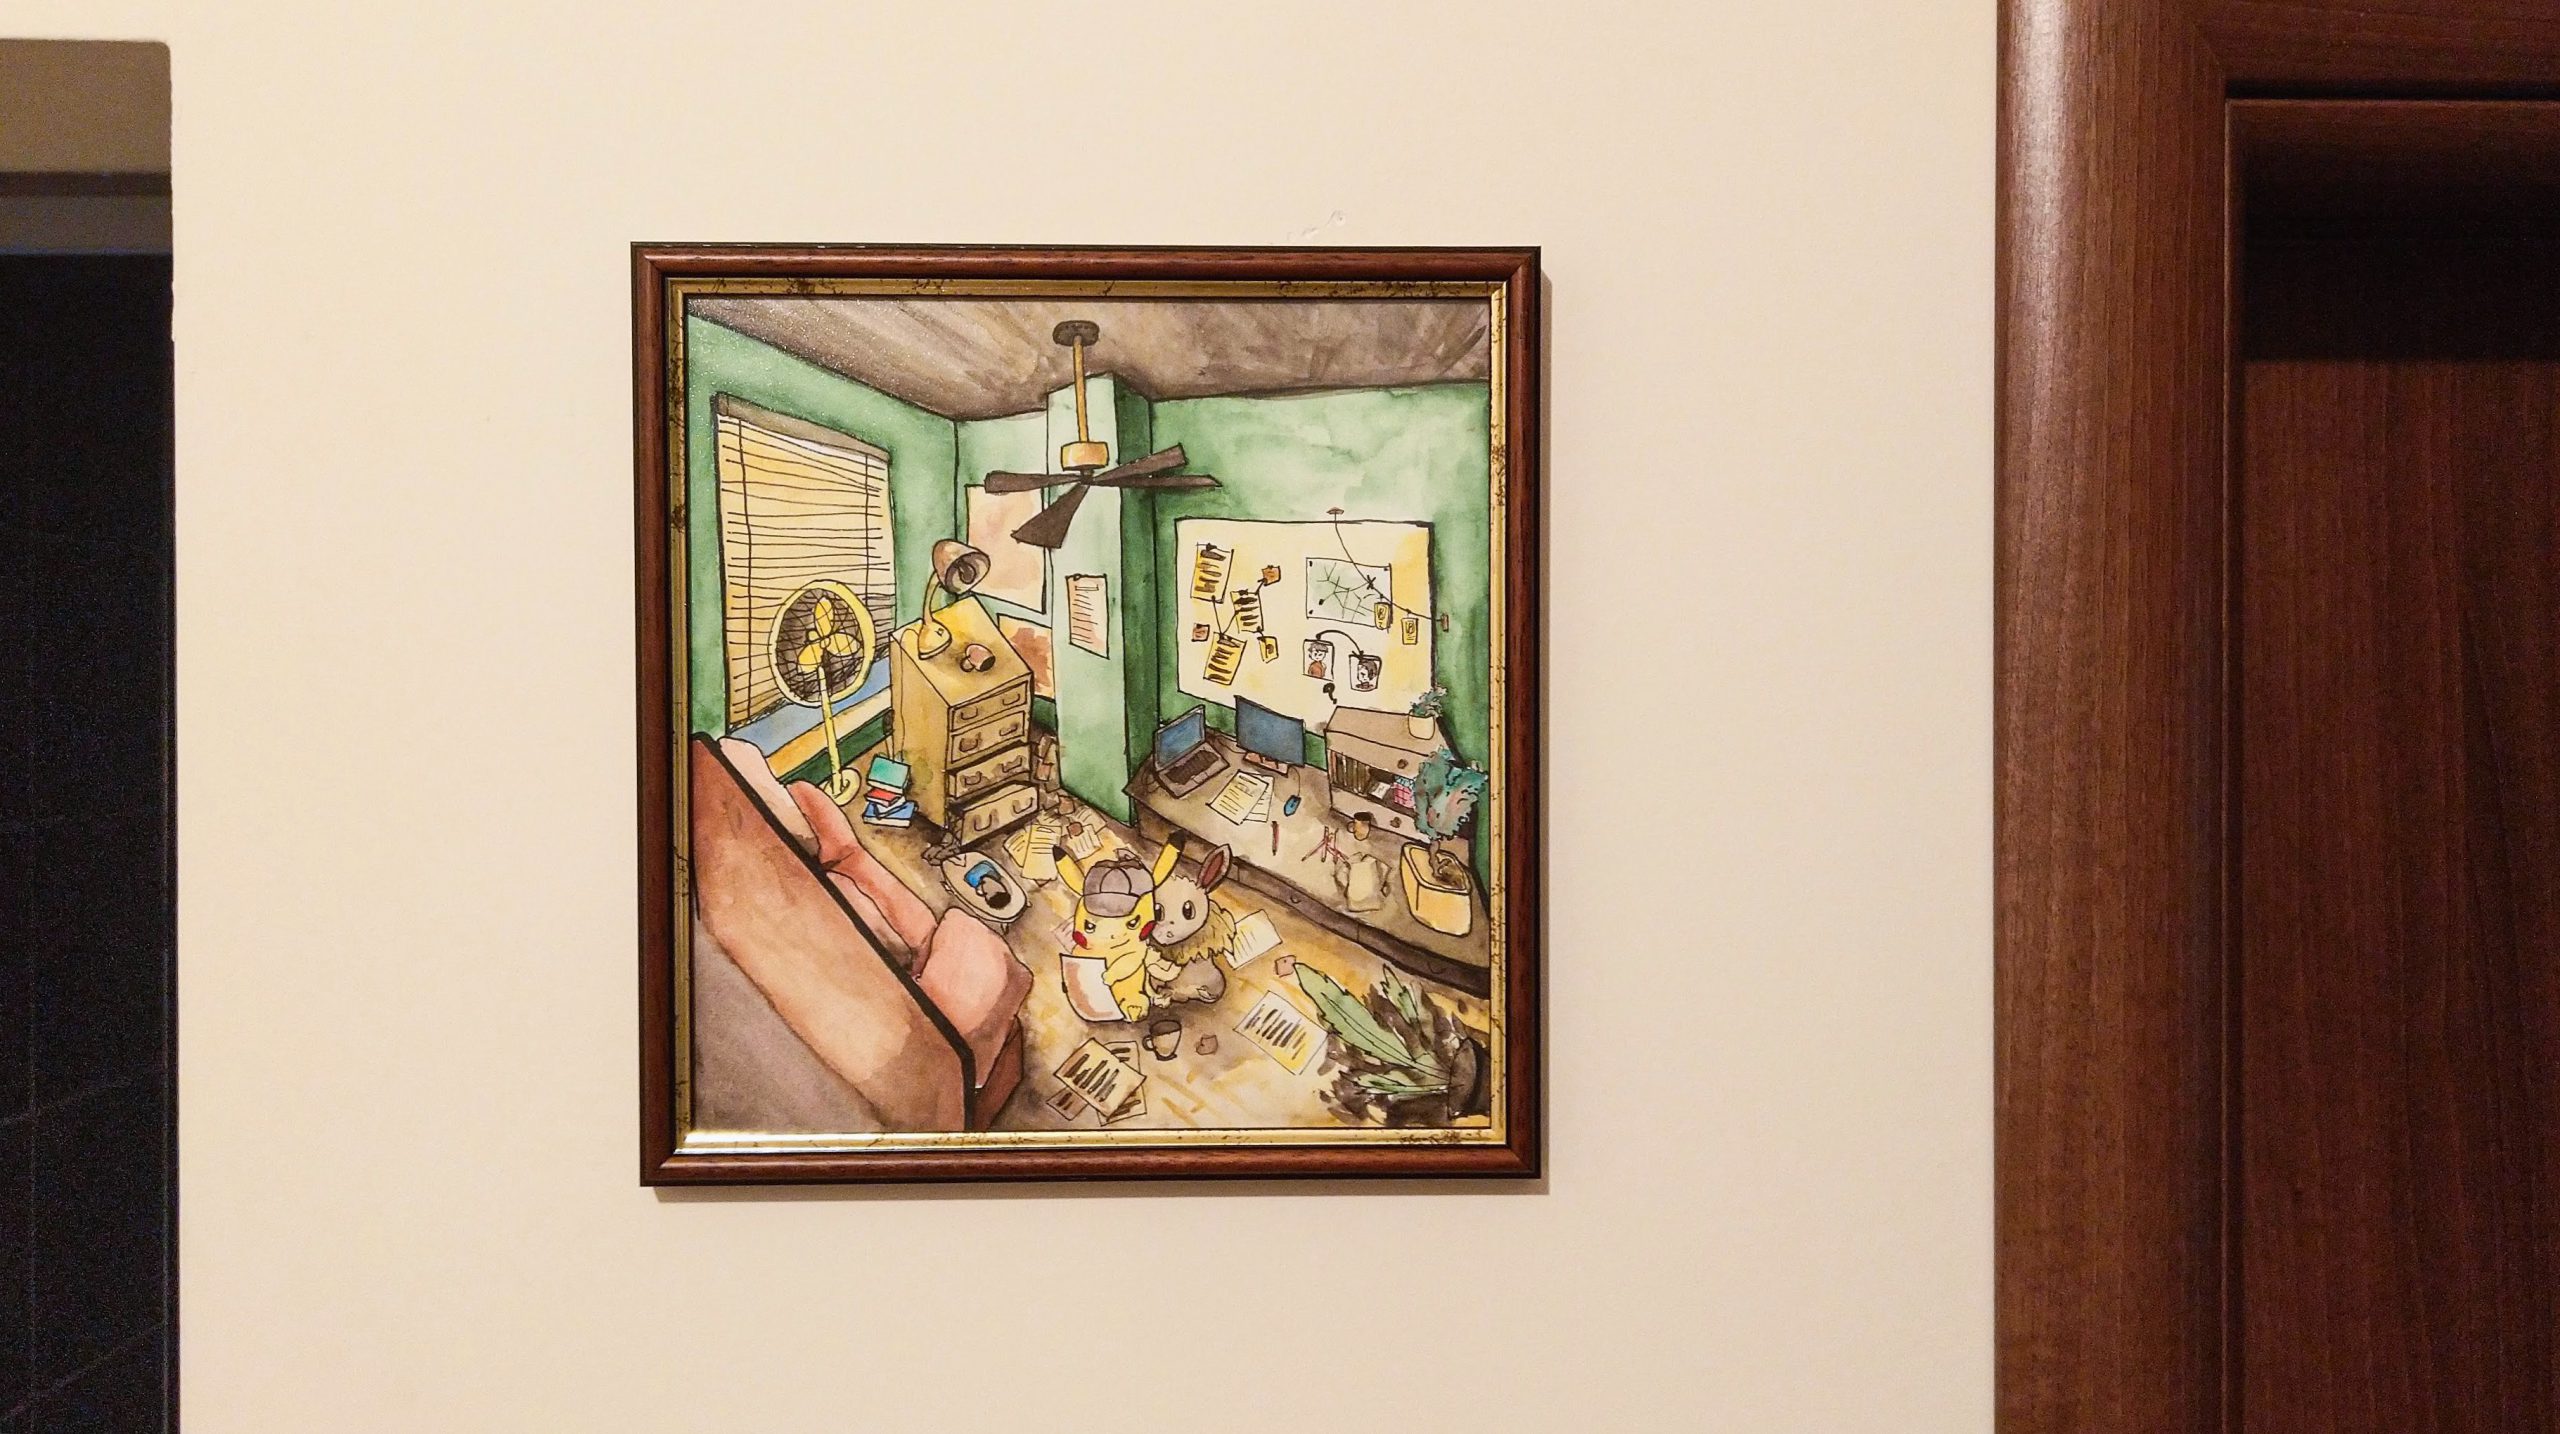 Detective Pikachu Artwork Framed